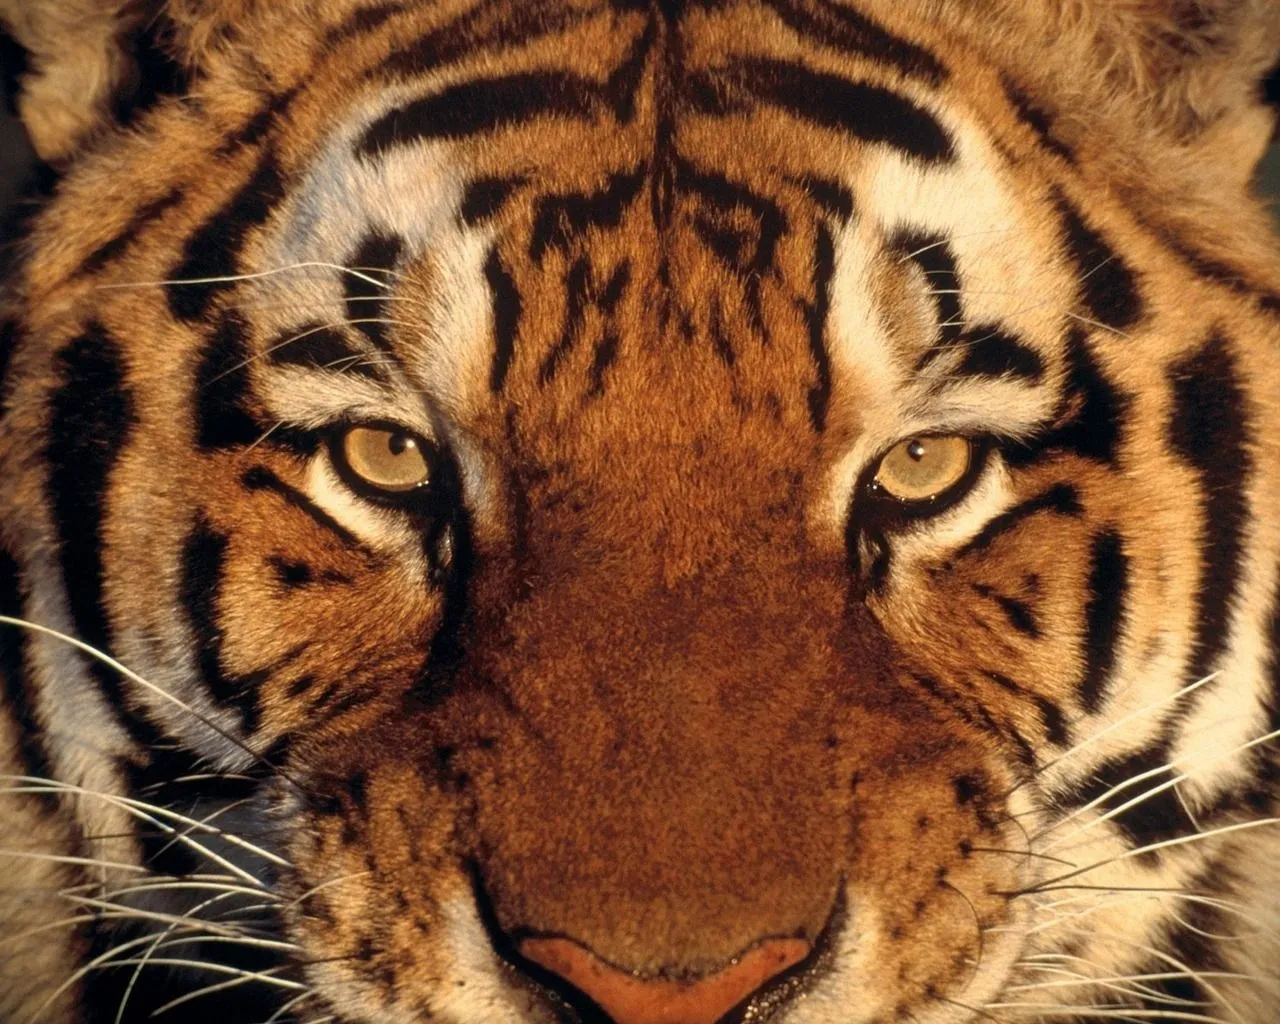 Coleccion de fotos de felinos en HD - tigres y otros.: Imagenes ...